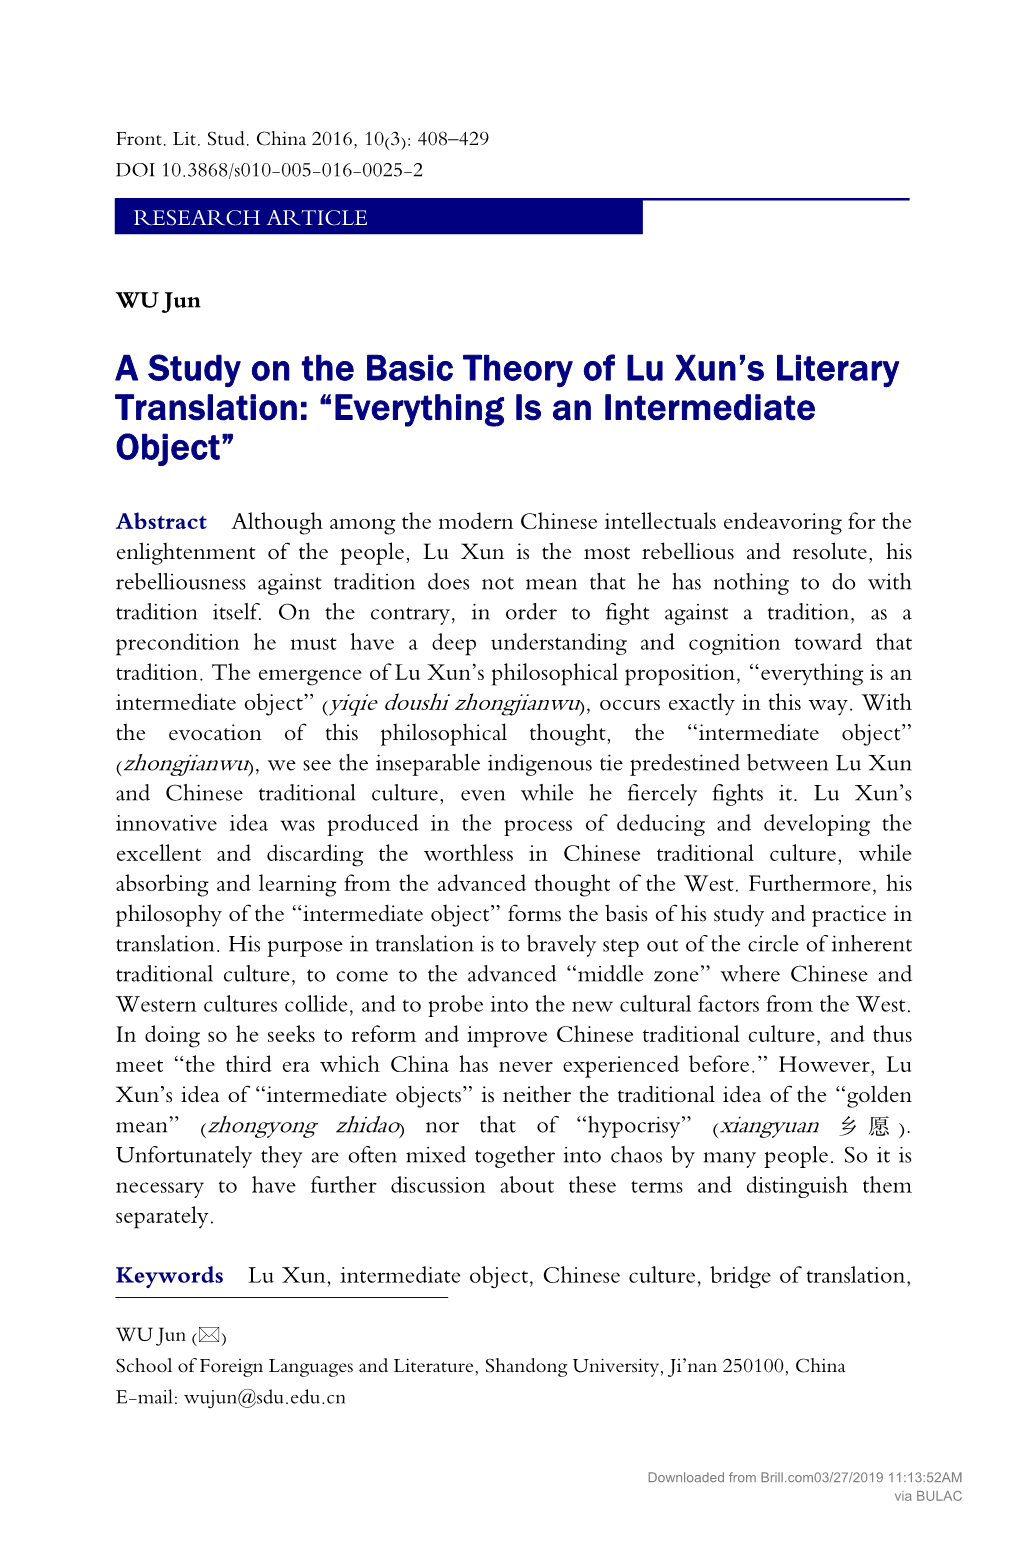 A Study on the Basic Theory of Lu Xun's Literary Translation